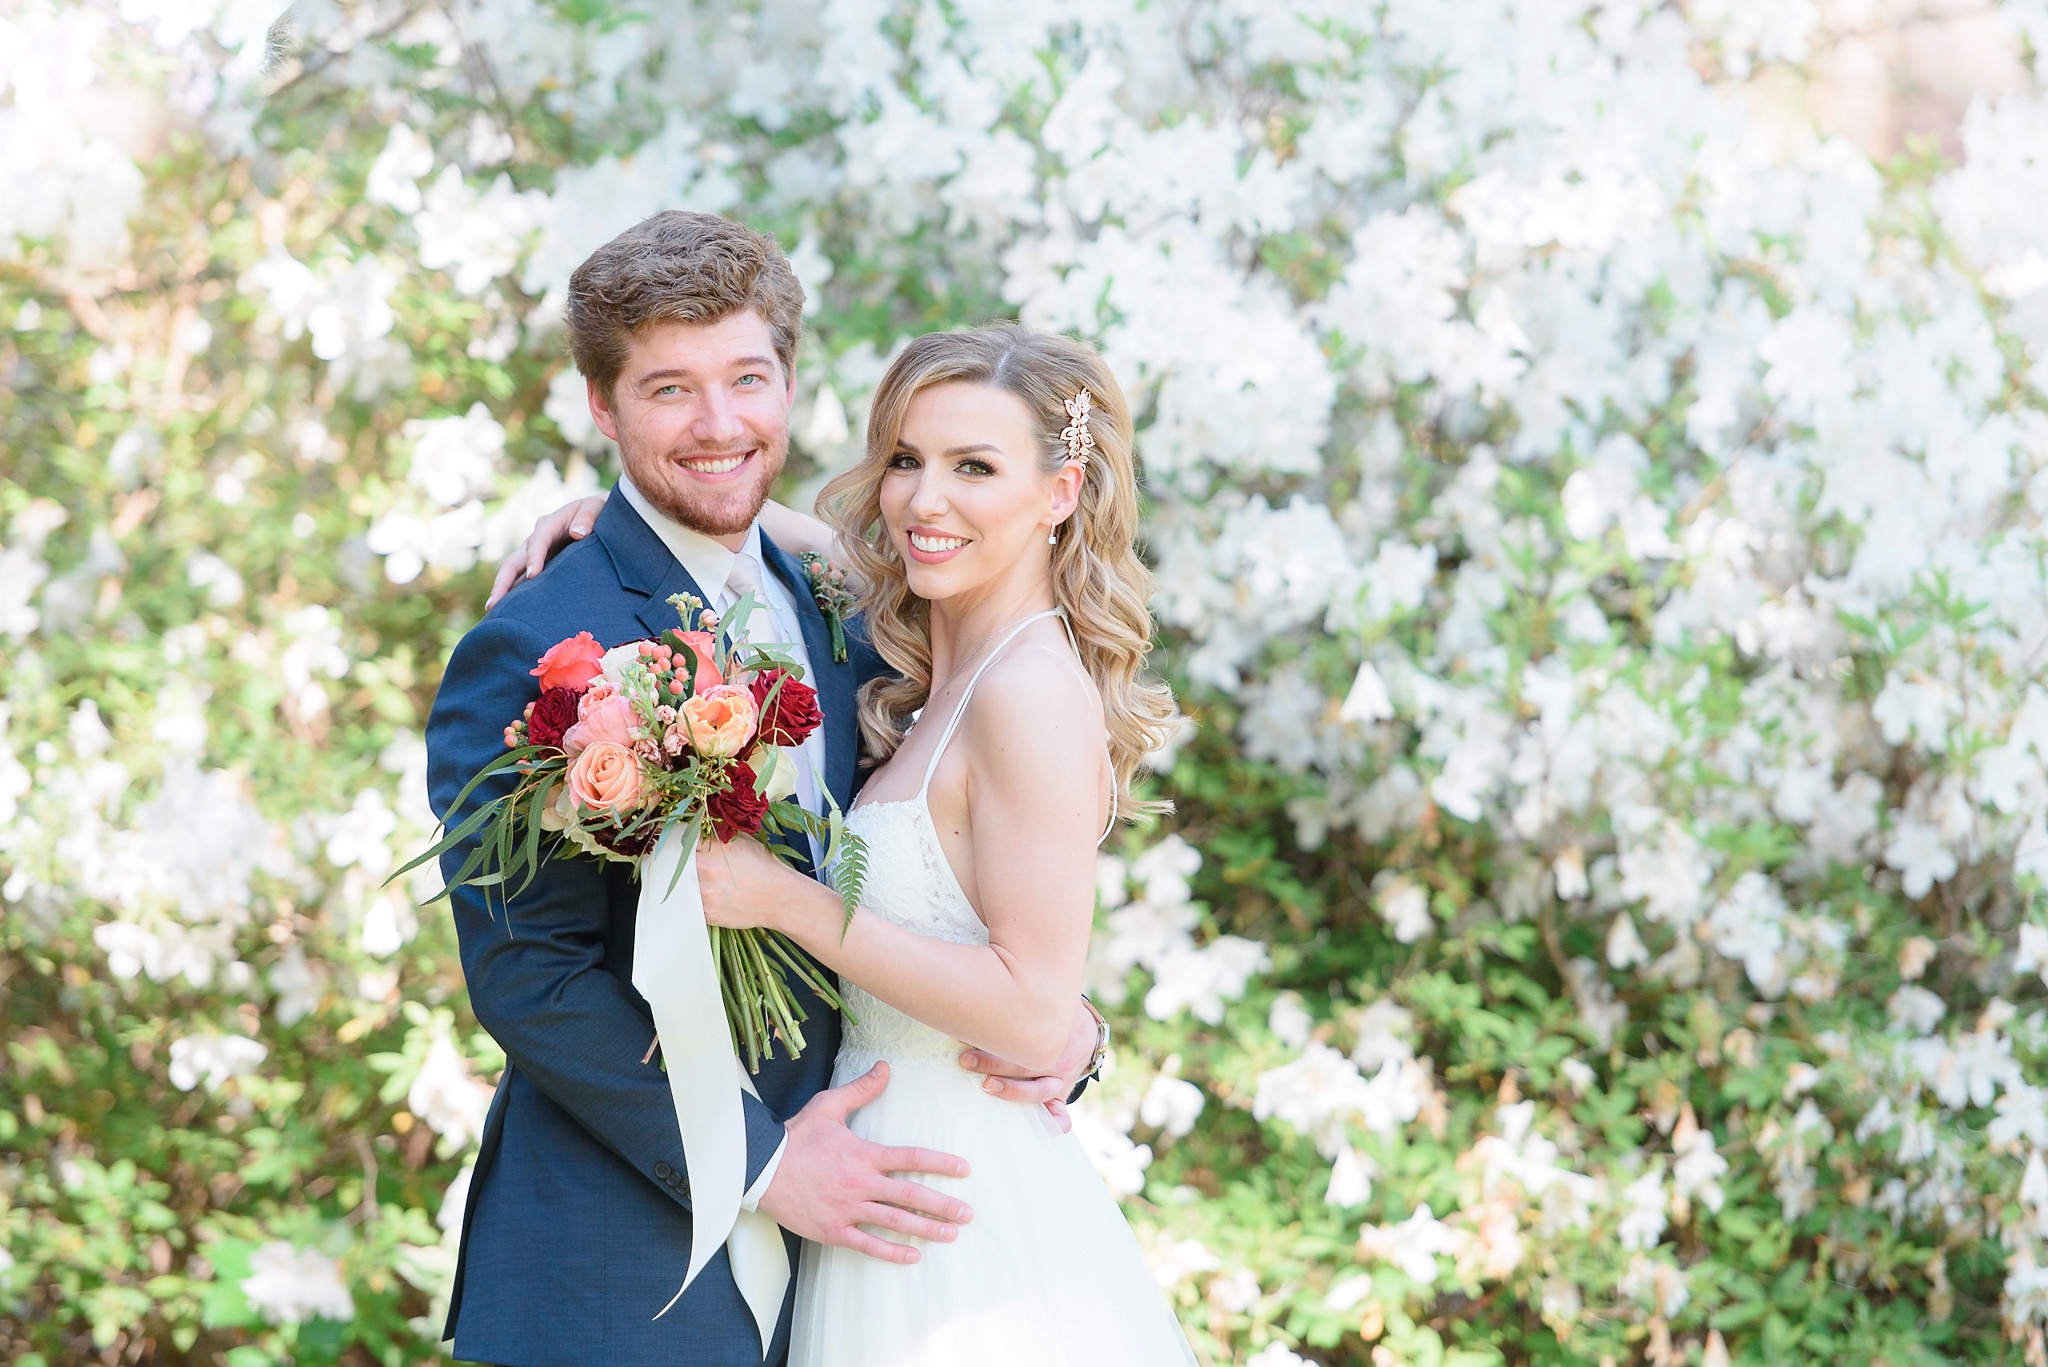 Aldridge Gardens Spring Wedding | Birmingham Alabama Wedding Photographers_0066.jpg